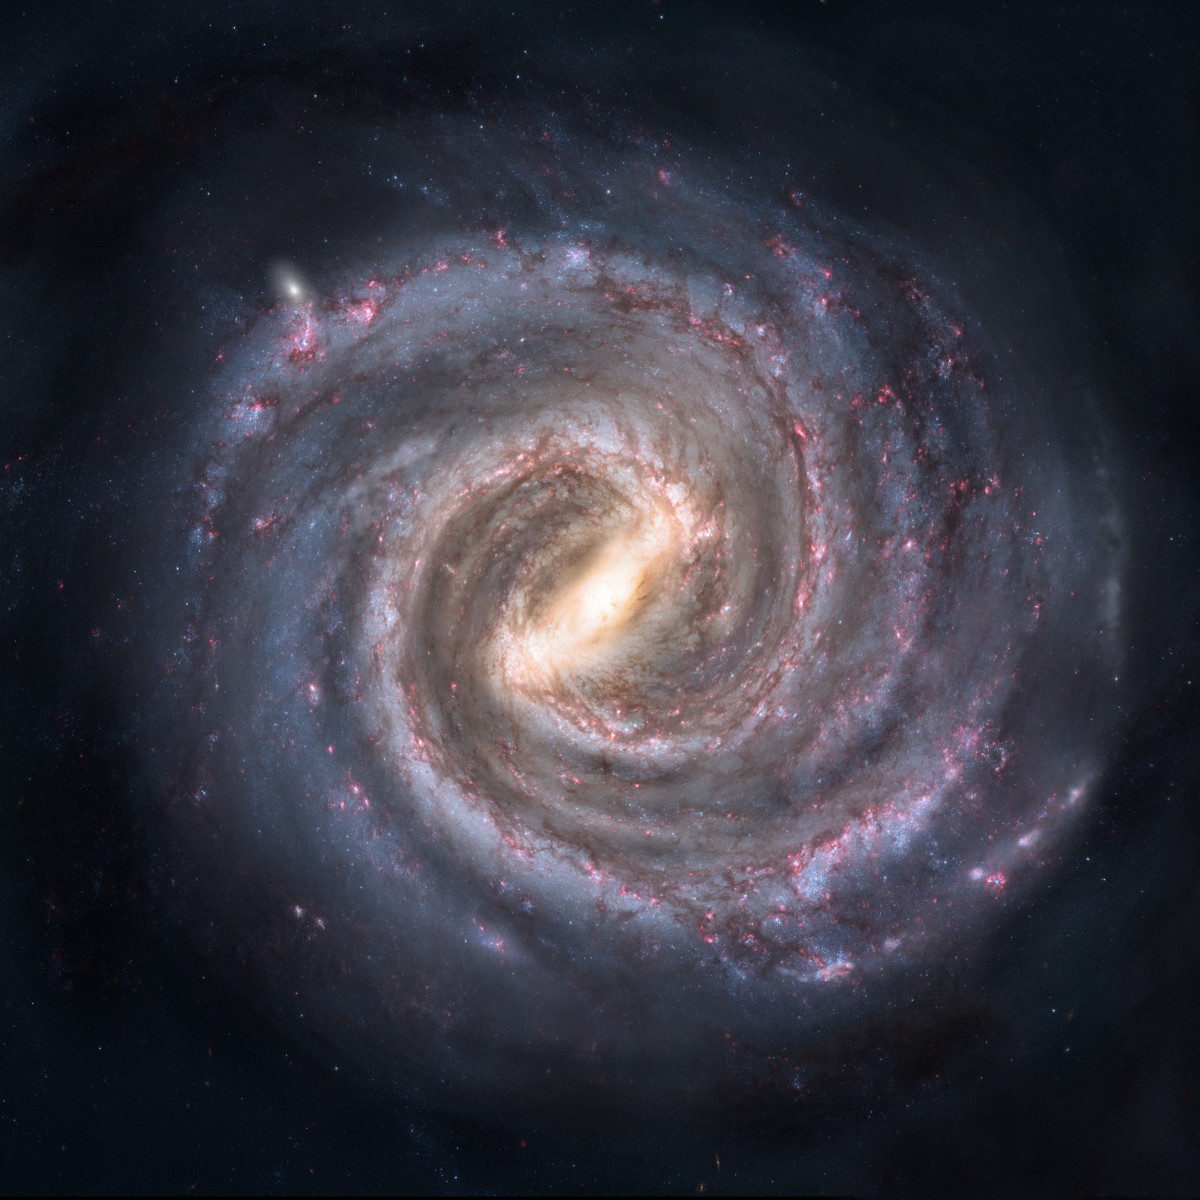 银河系是巨大的。如果那里有智慧生命，我们能找到吗?